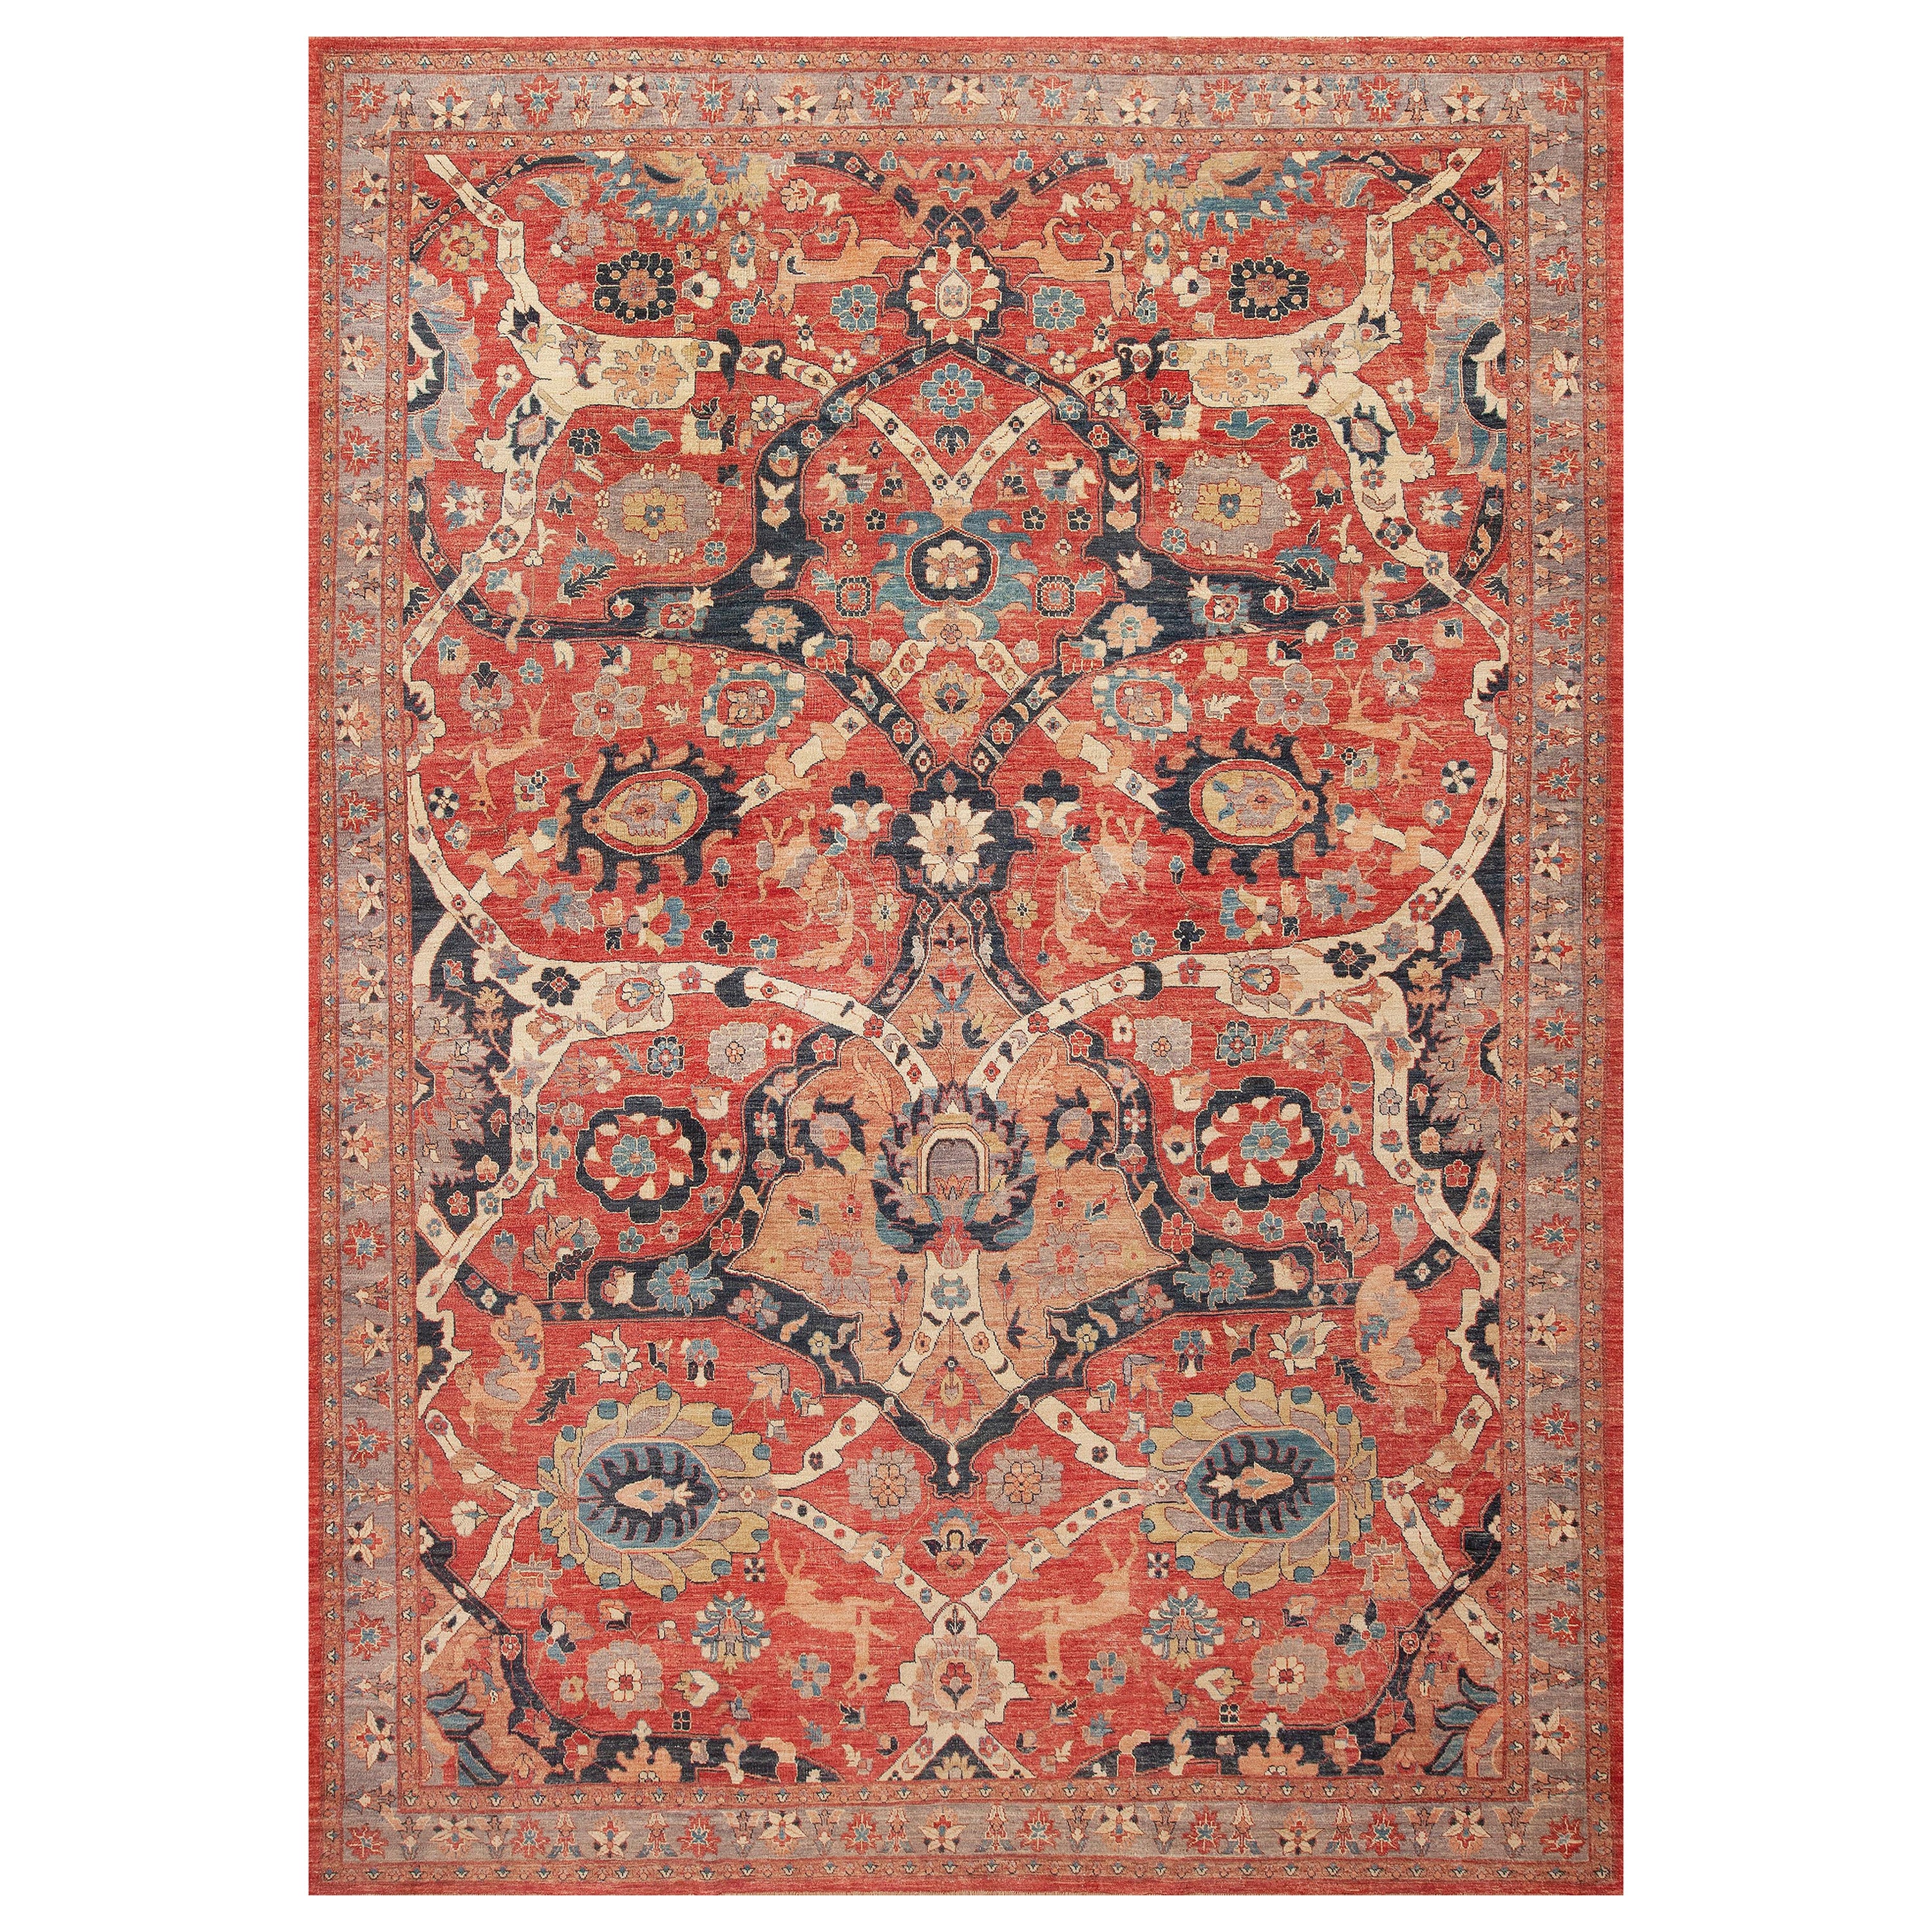 Nazmiyal Kollektion Moderner orientalischer Teppich im persischen Tierdesign 10'4" x 14'6"